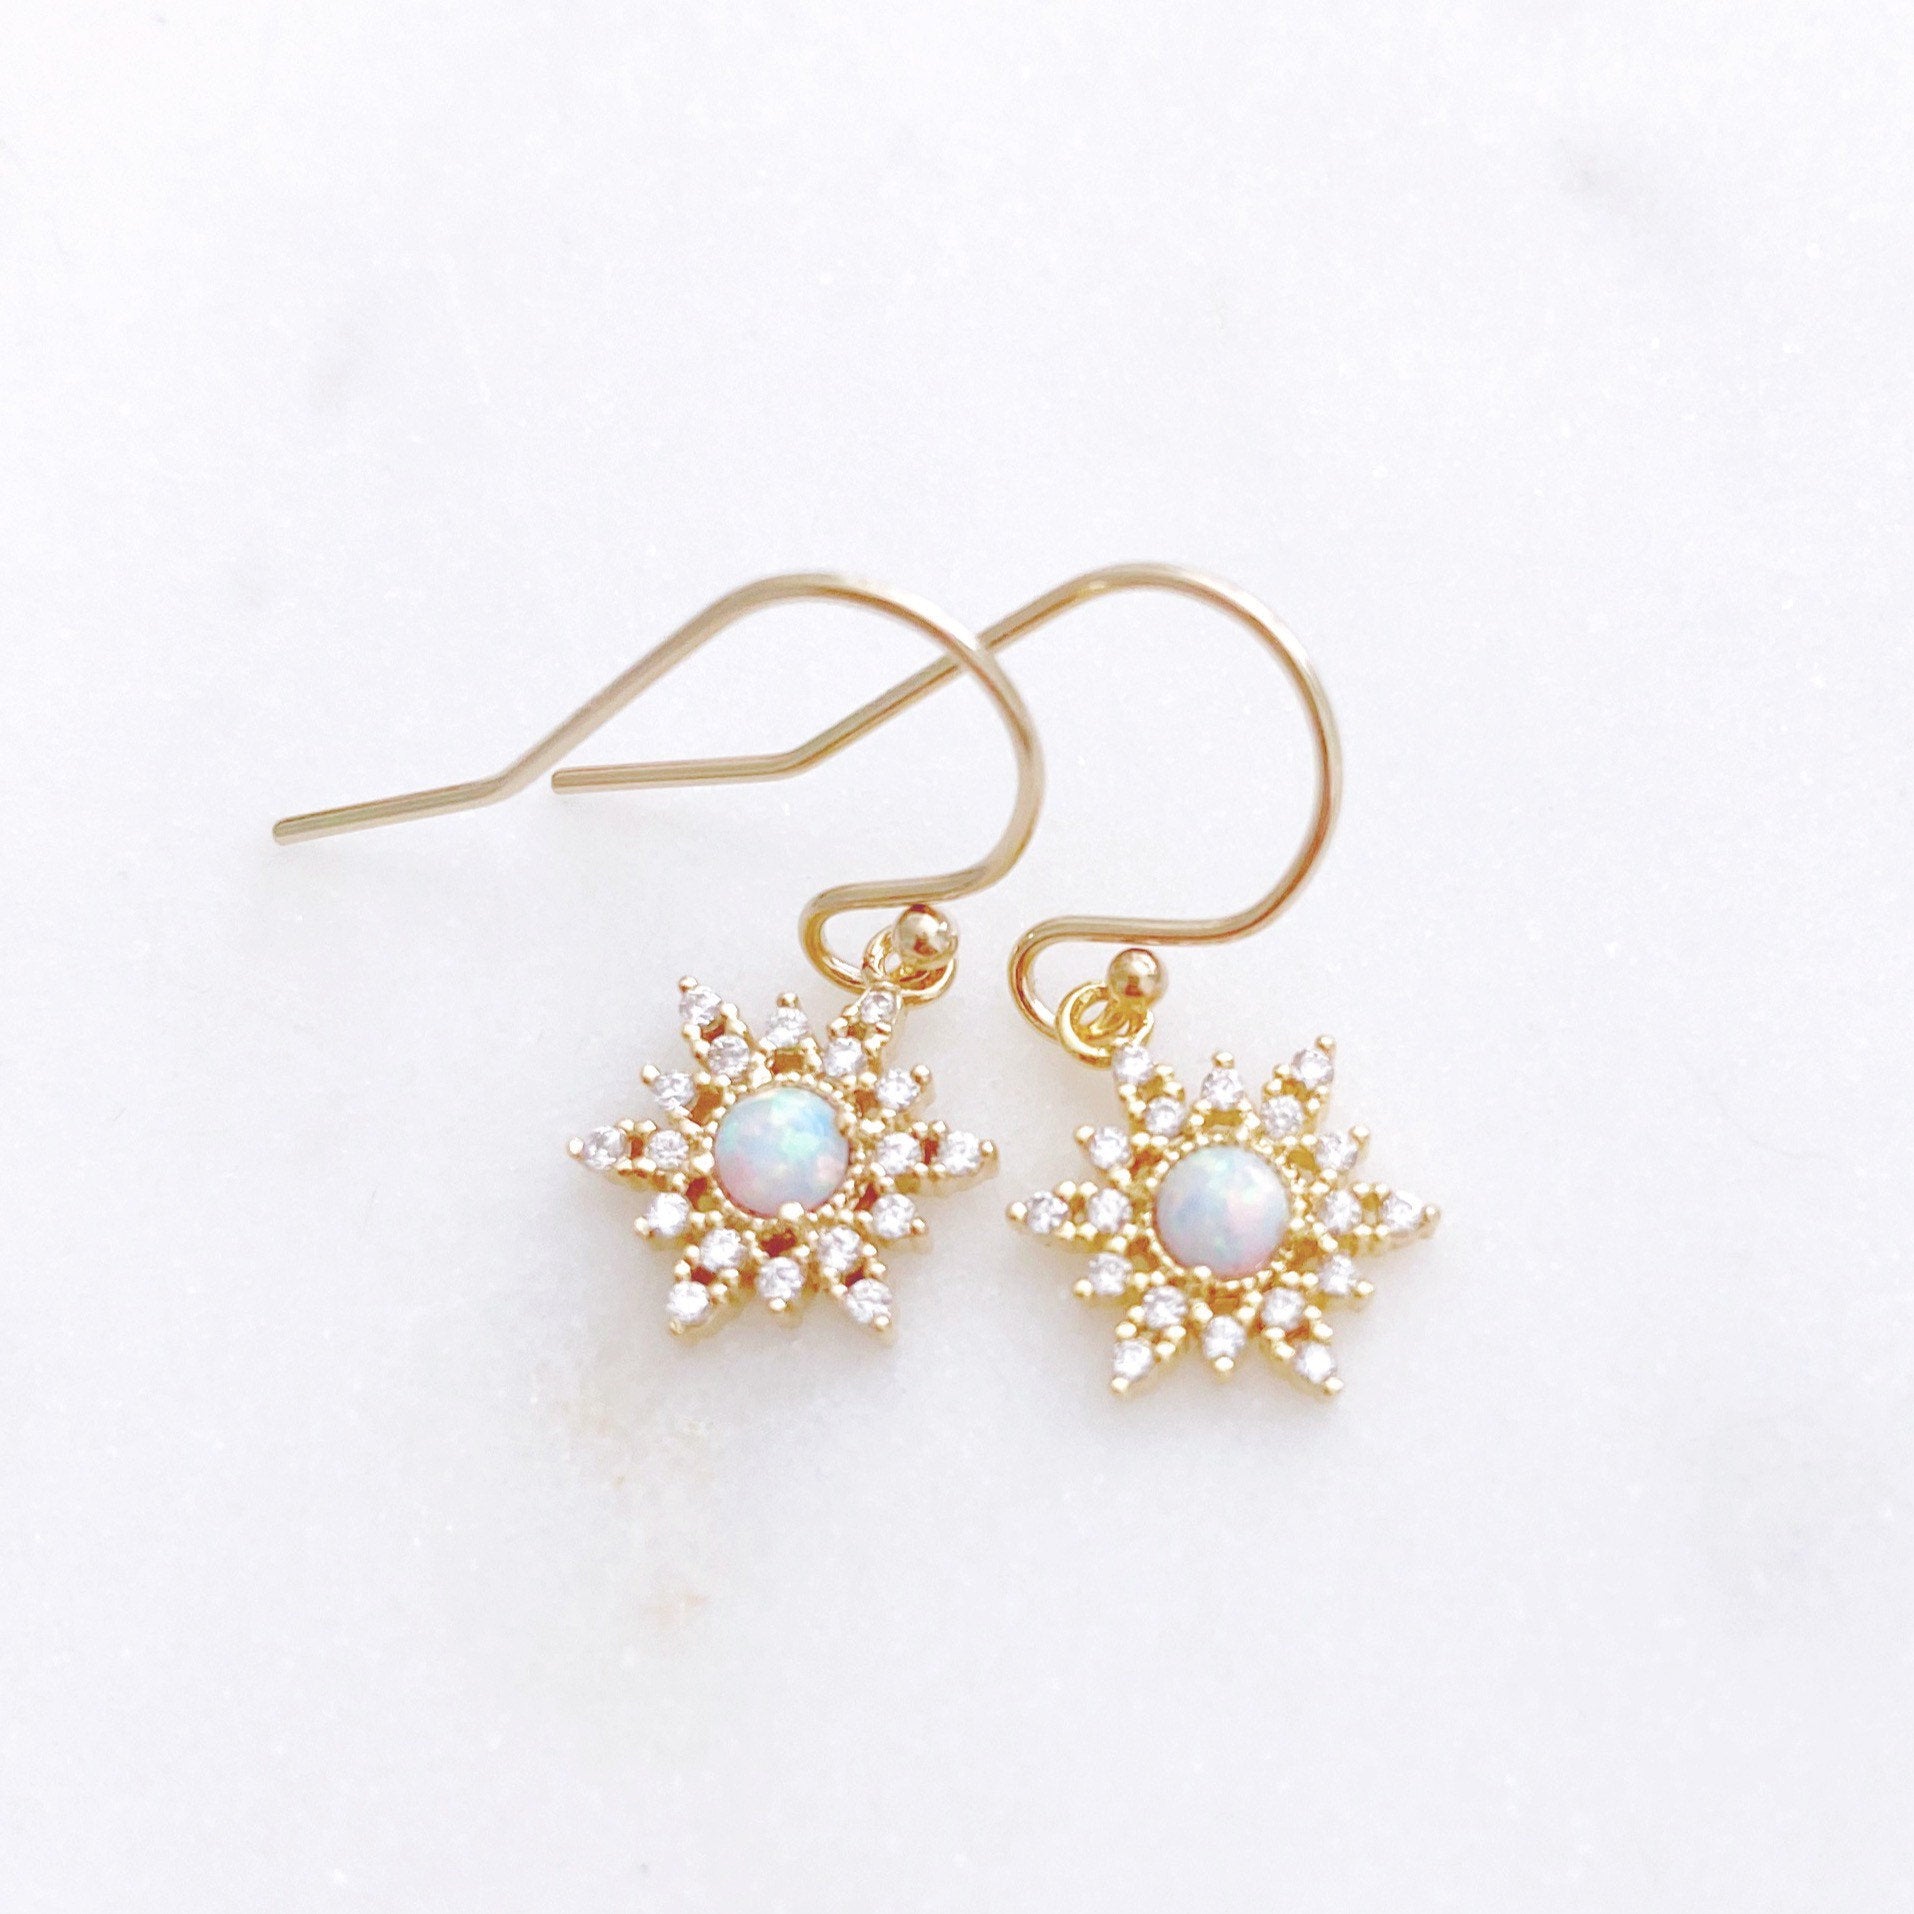 Snowflake Earrings, Opal Earrings, Christmas Earrings, Secret Santa Gift for Women, EVERETT